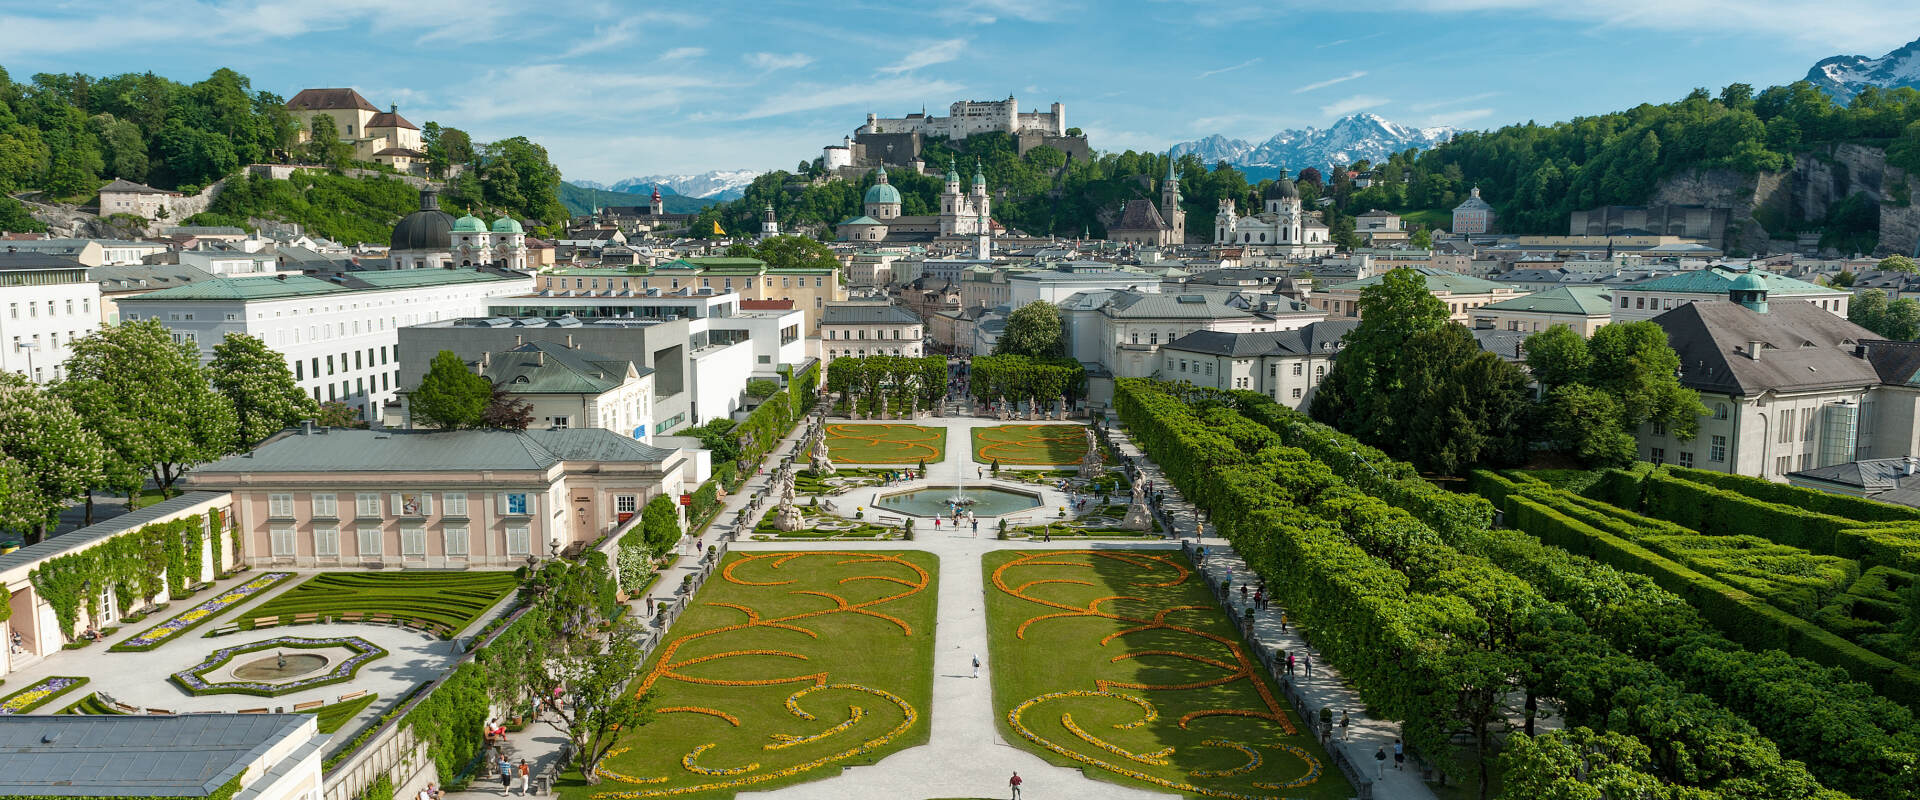 © Tourismus Salzburg GmbH